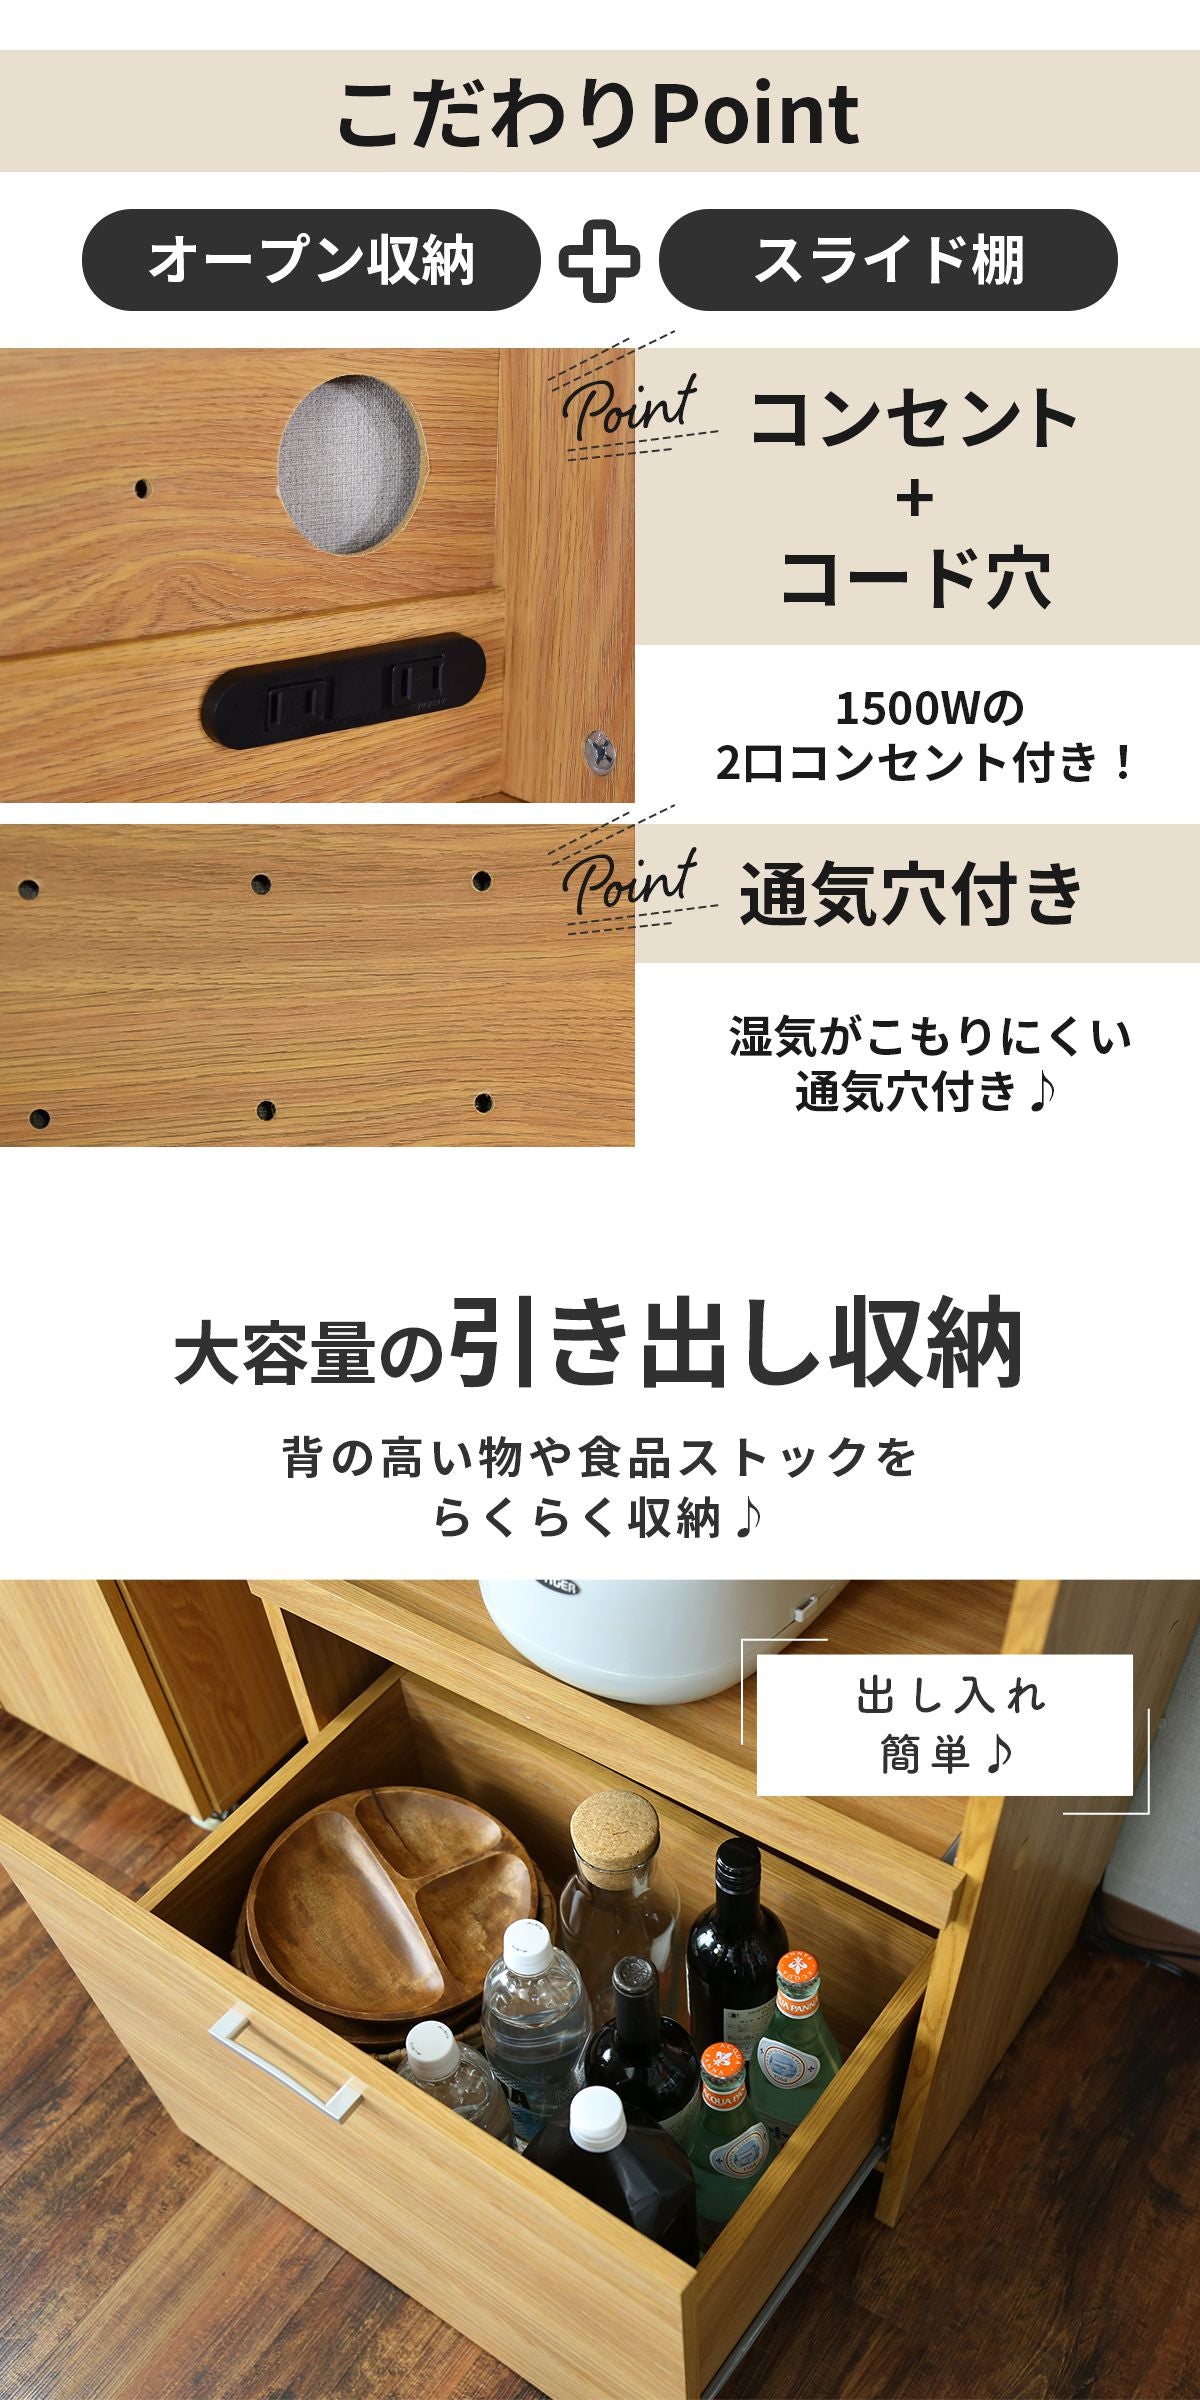 【幅60】 キッチンボード カイハイタイプ60